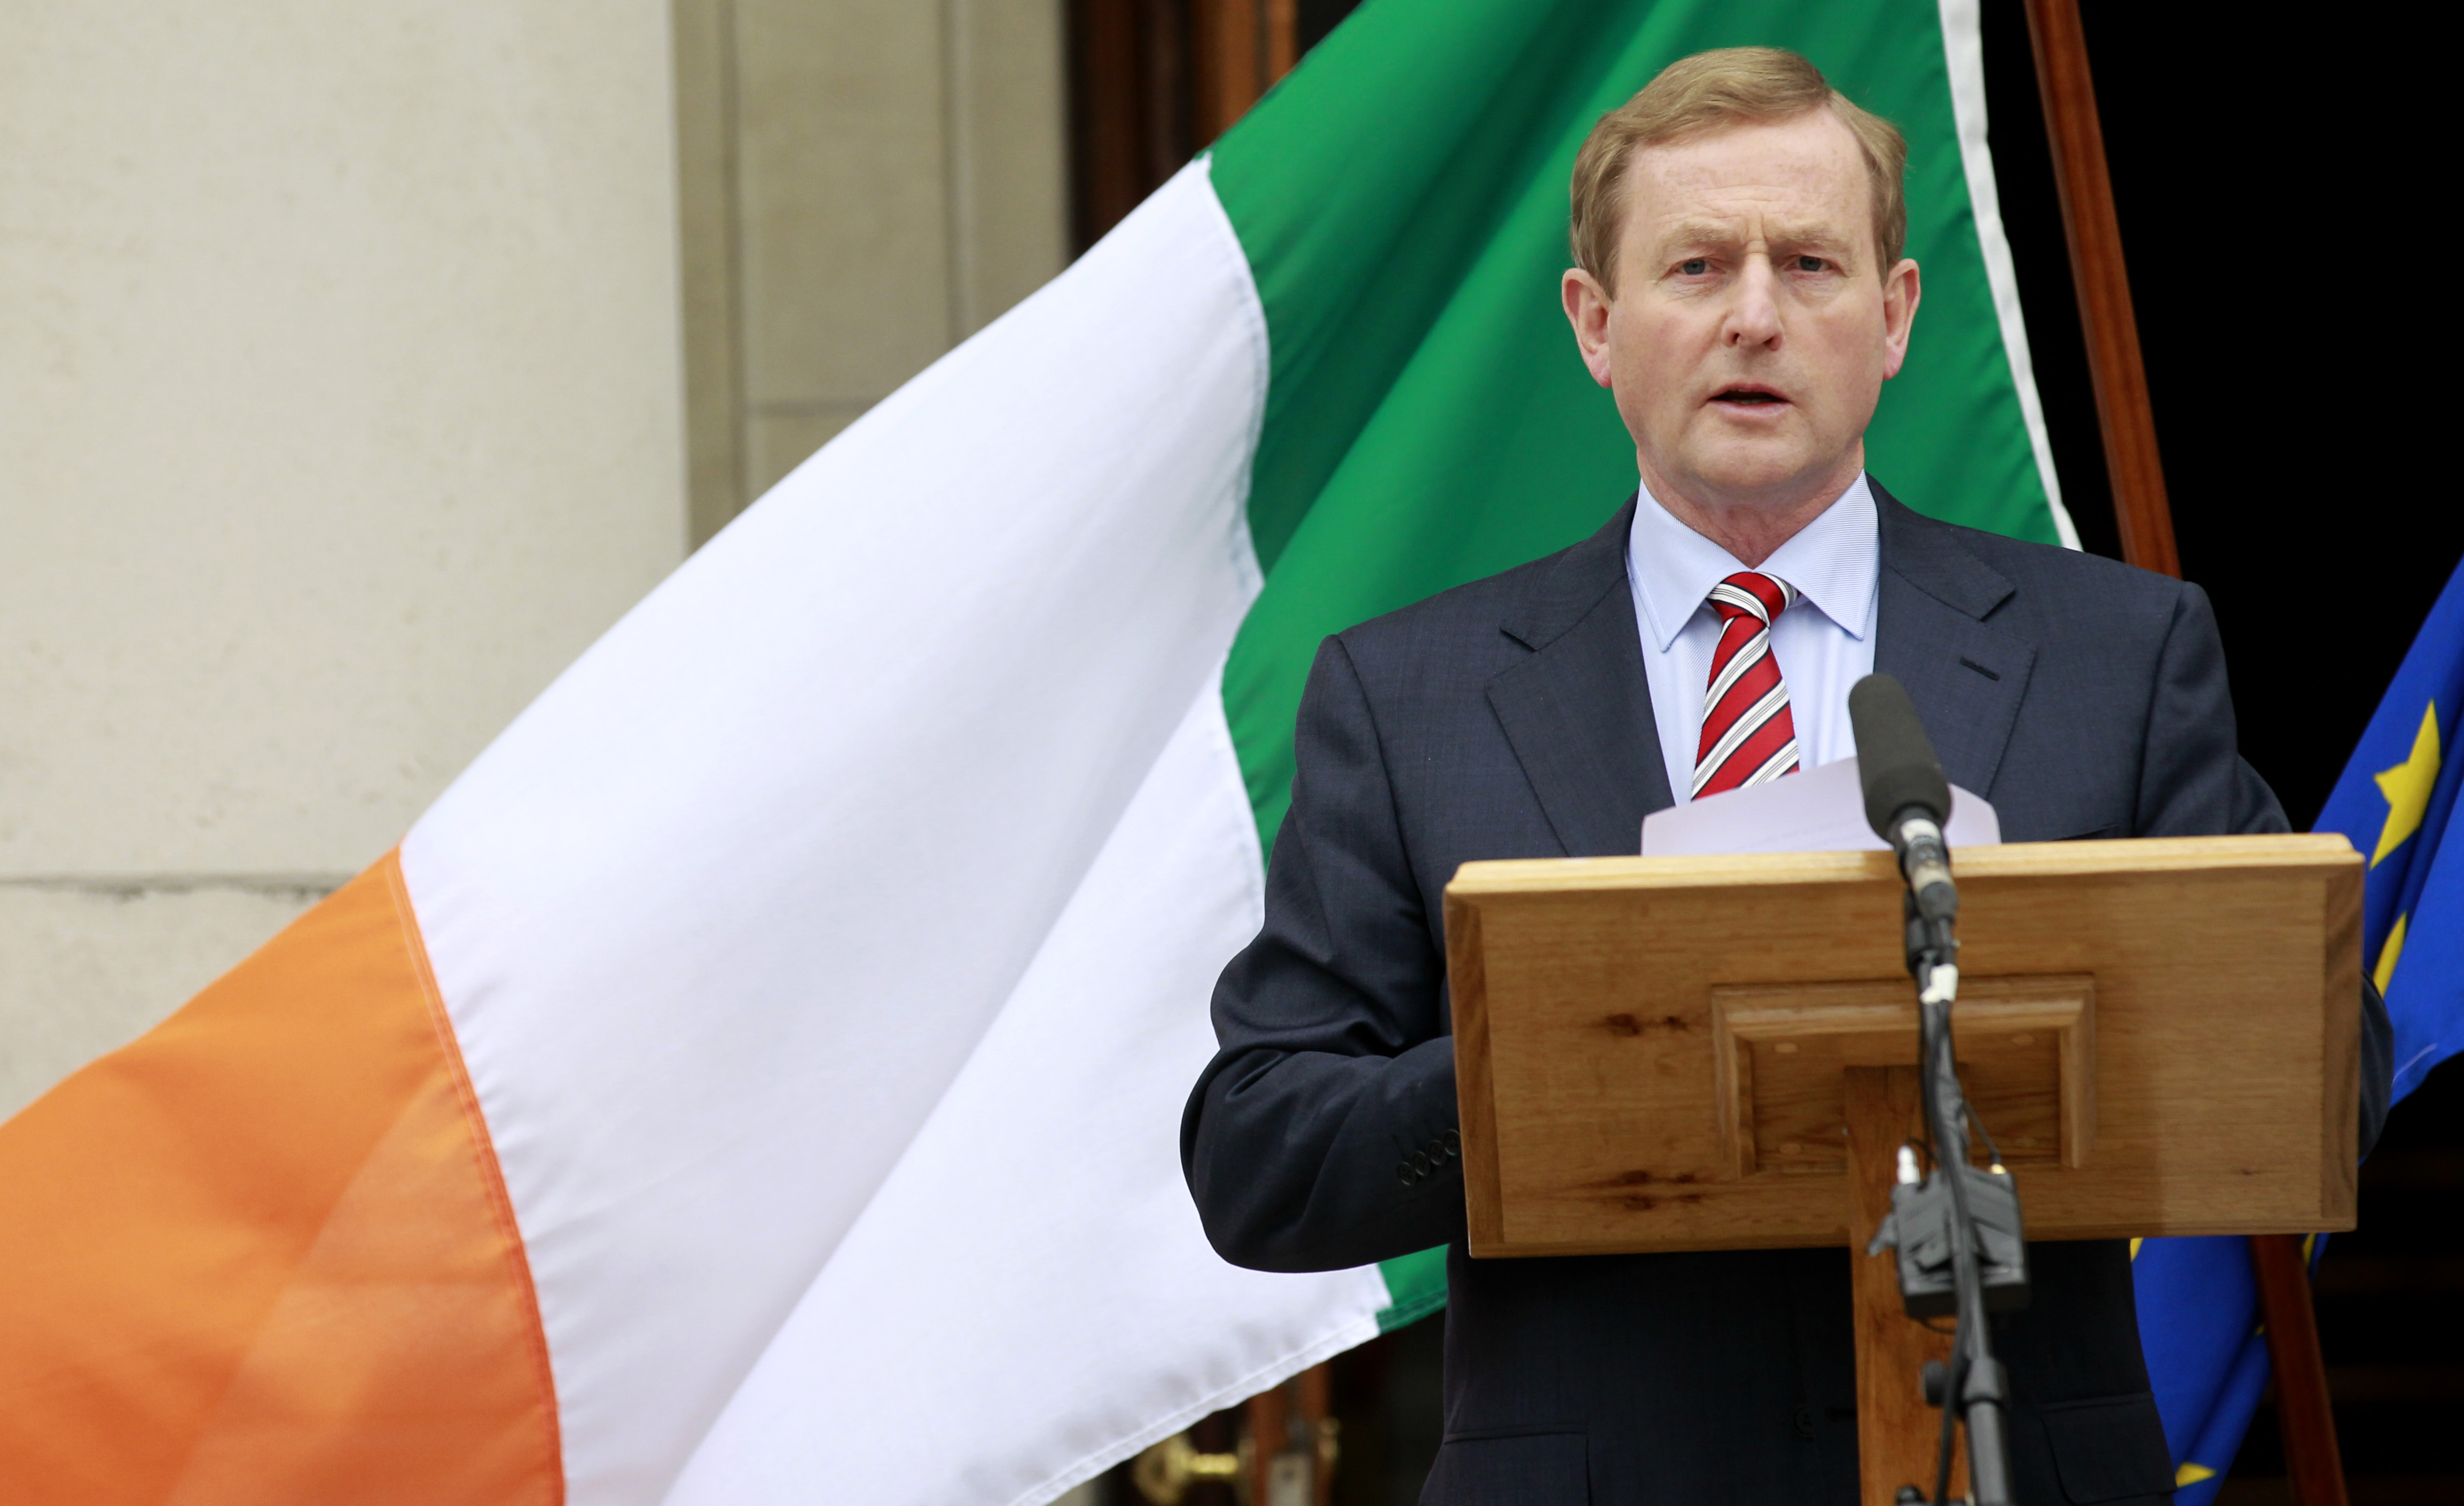 Αλλαγές στο δικό της μνημόνιο θα ζητήσει η Ιρλανδία μετά την συμφωνία για την Ισπανία